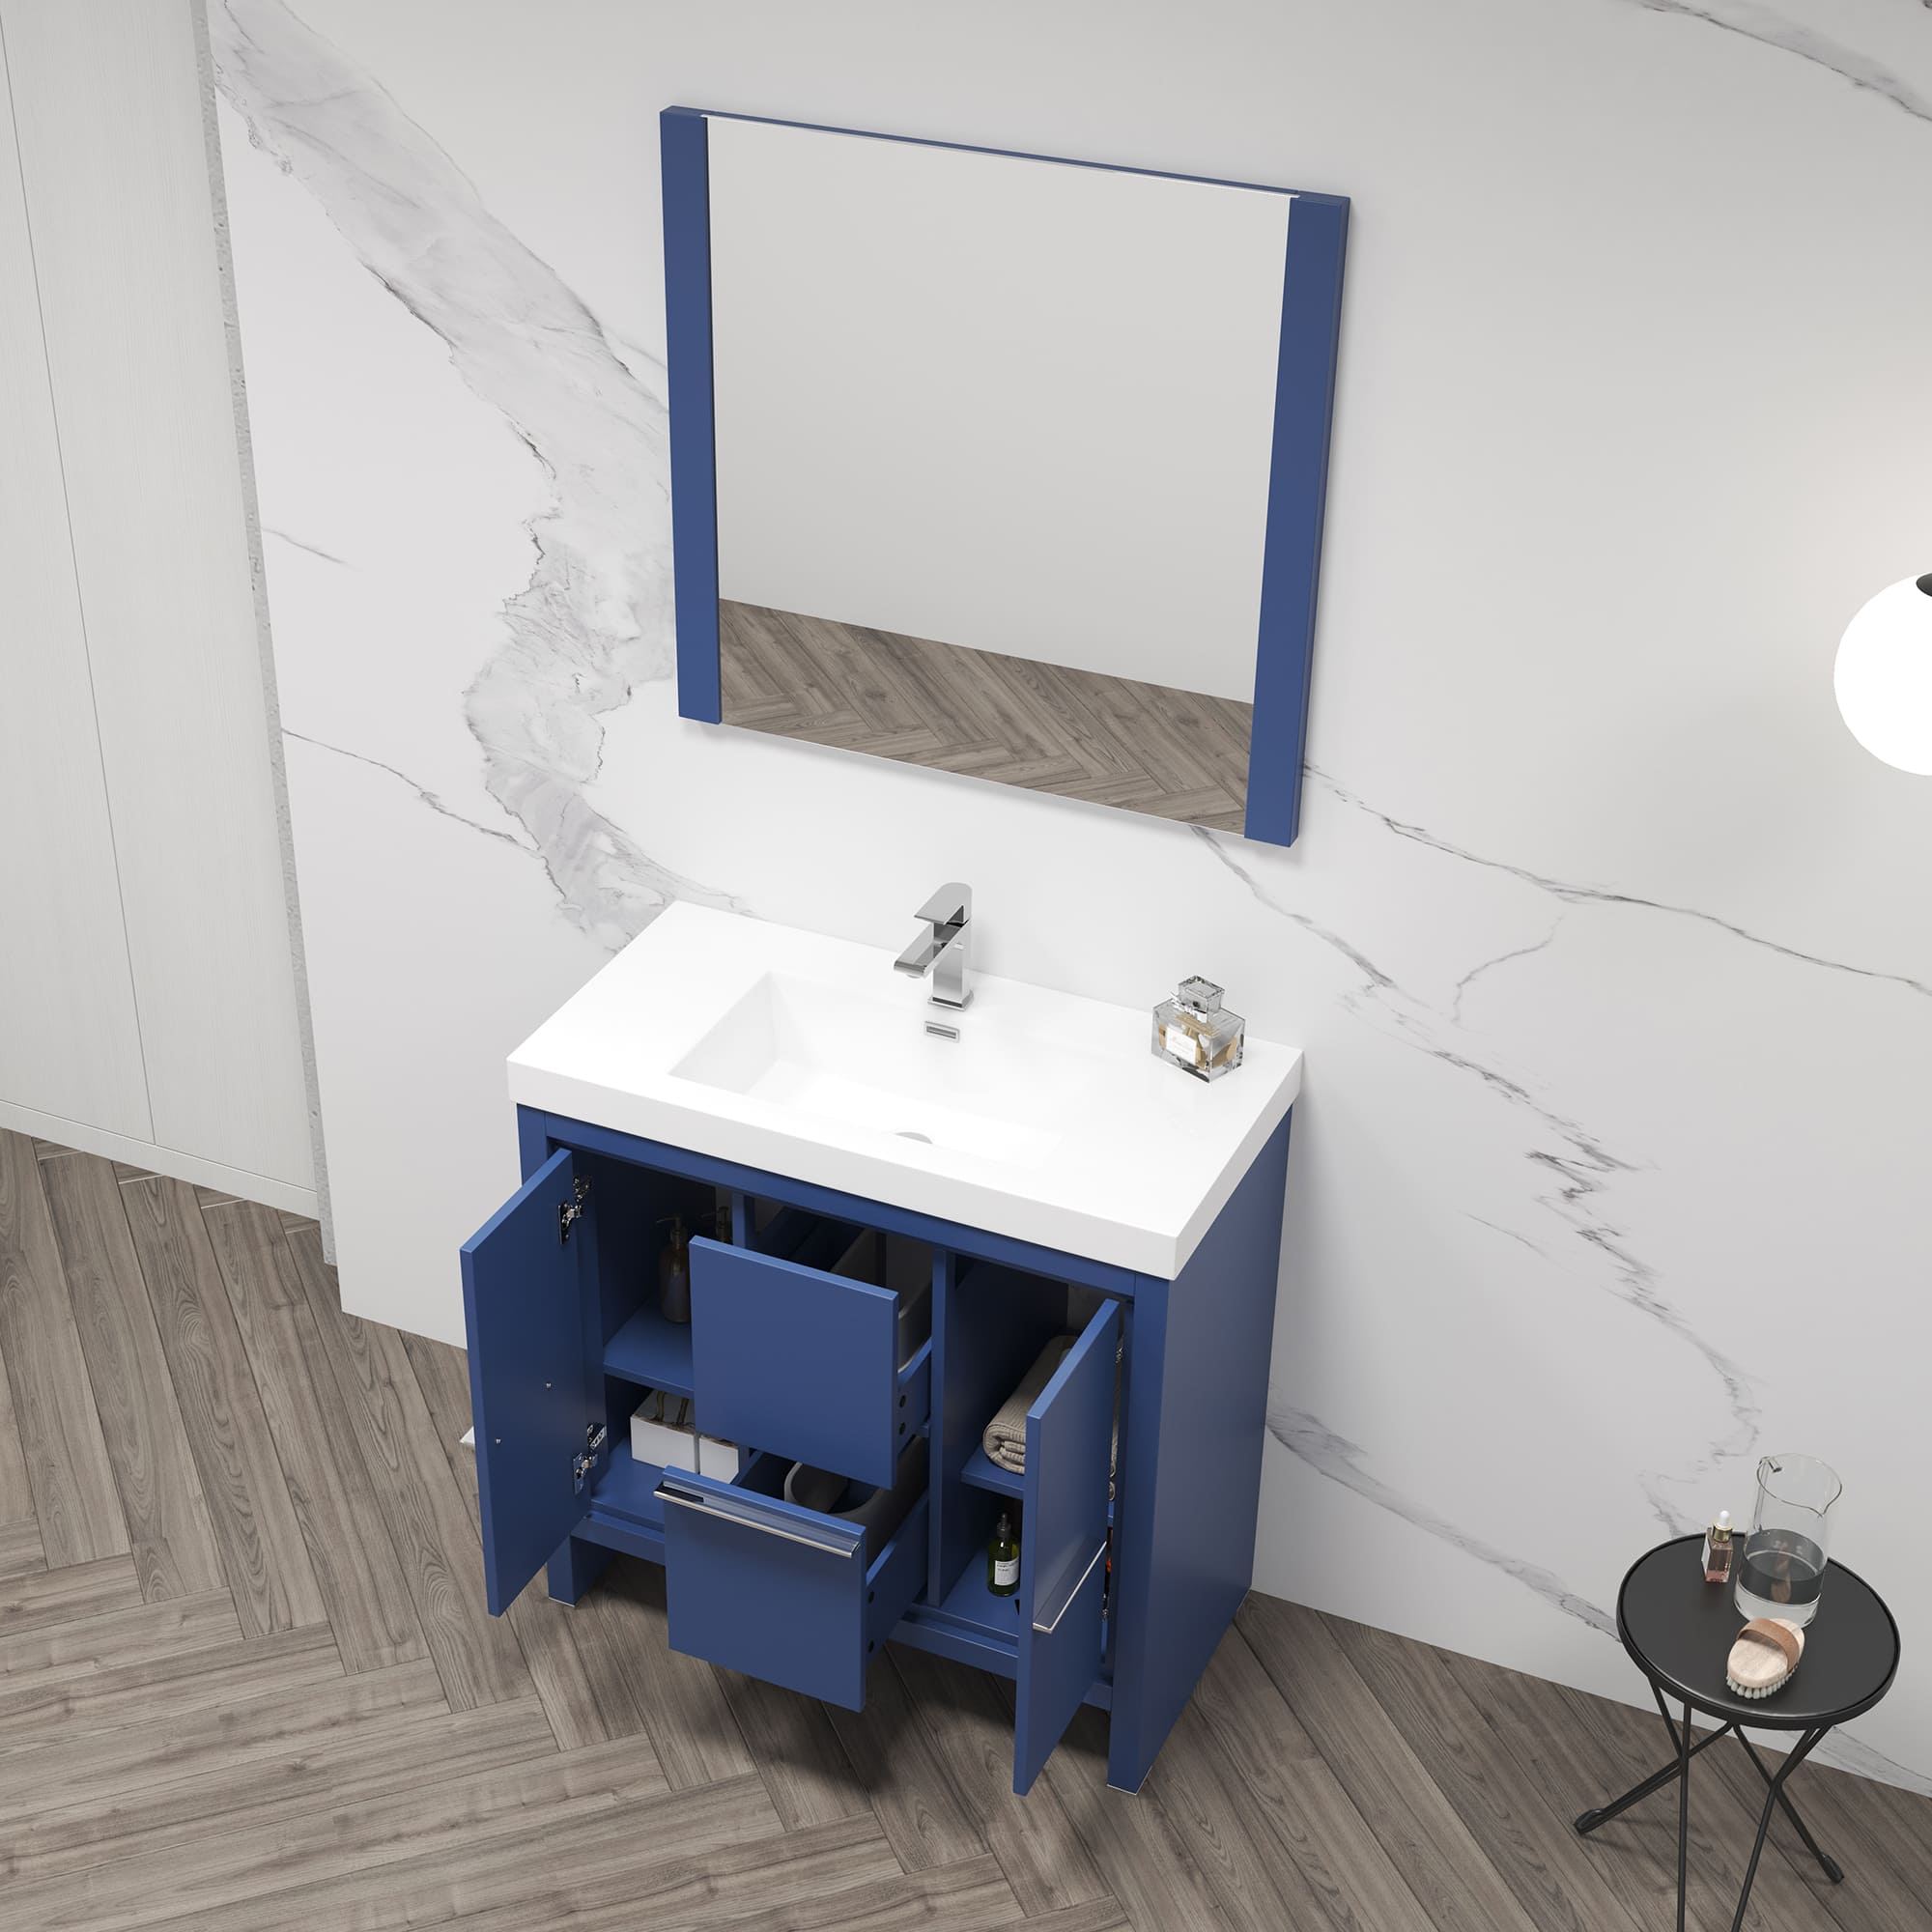 Milan 36" Bathroom Vanity  #size_36"  #color_navy blue #countertop_acrylic